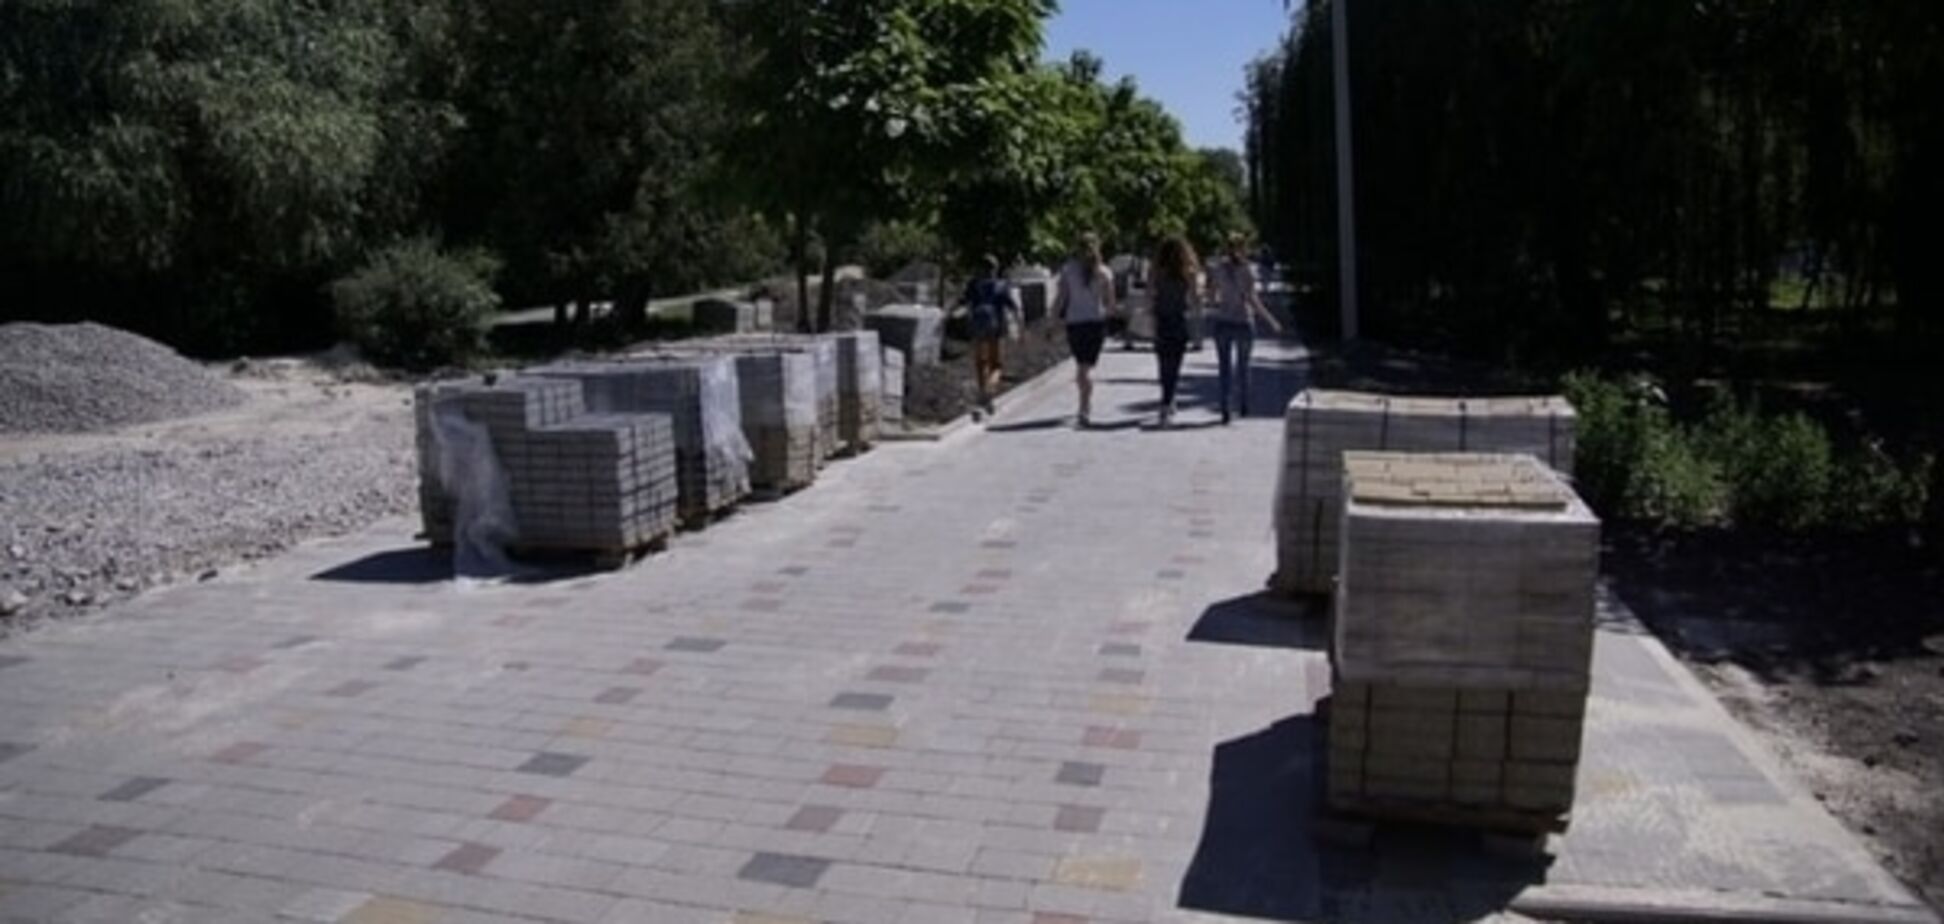 Розлазиться на очах: у Тернополі нарікають на неякісну доріжку у парку